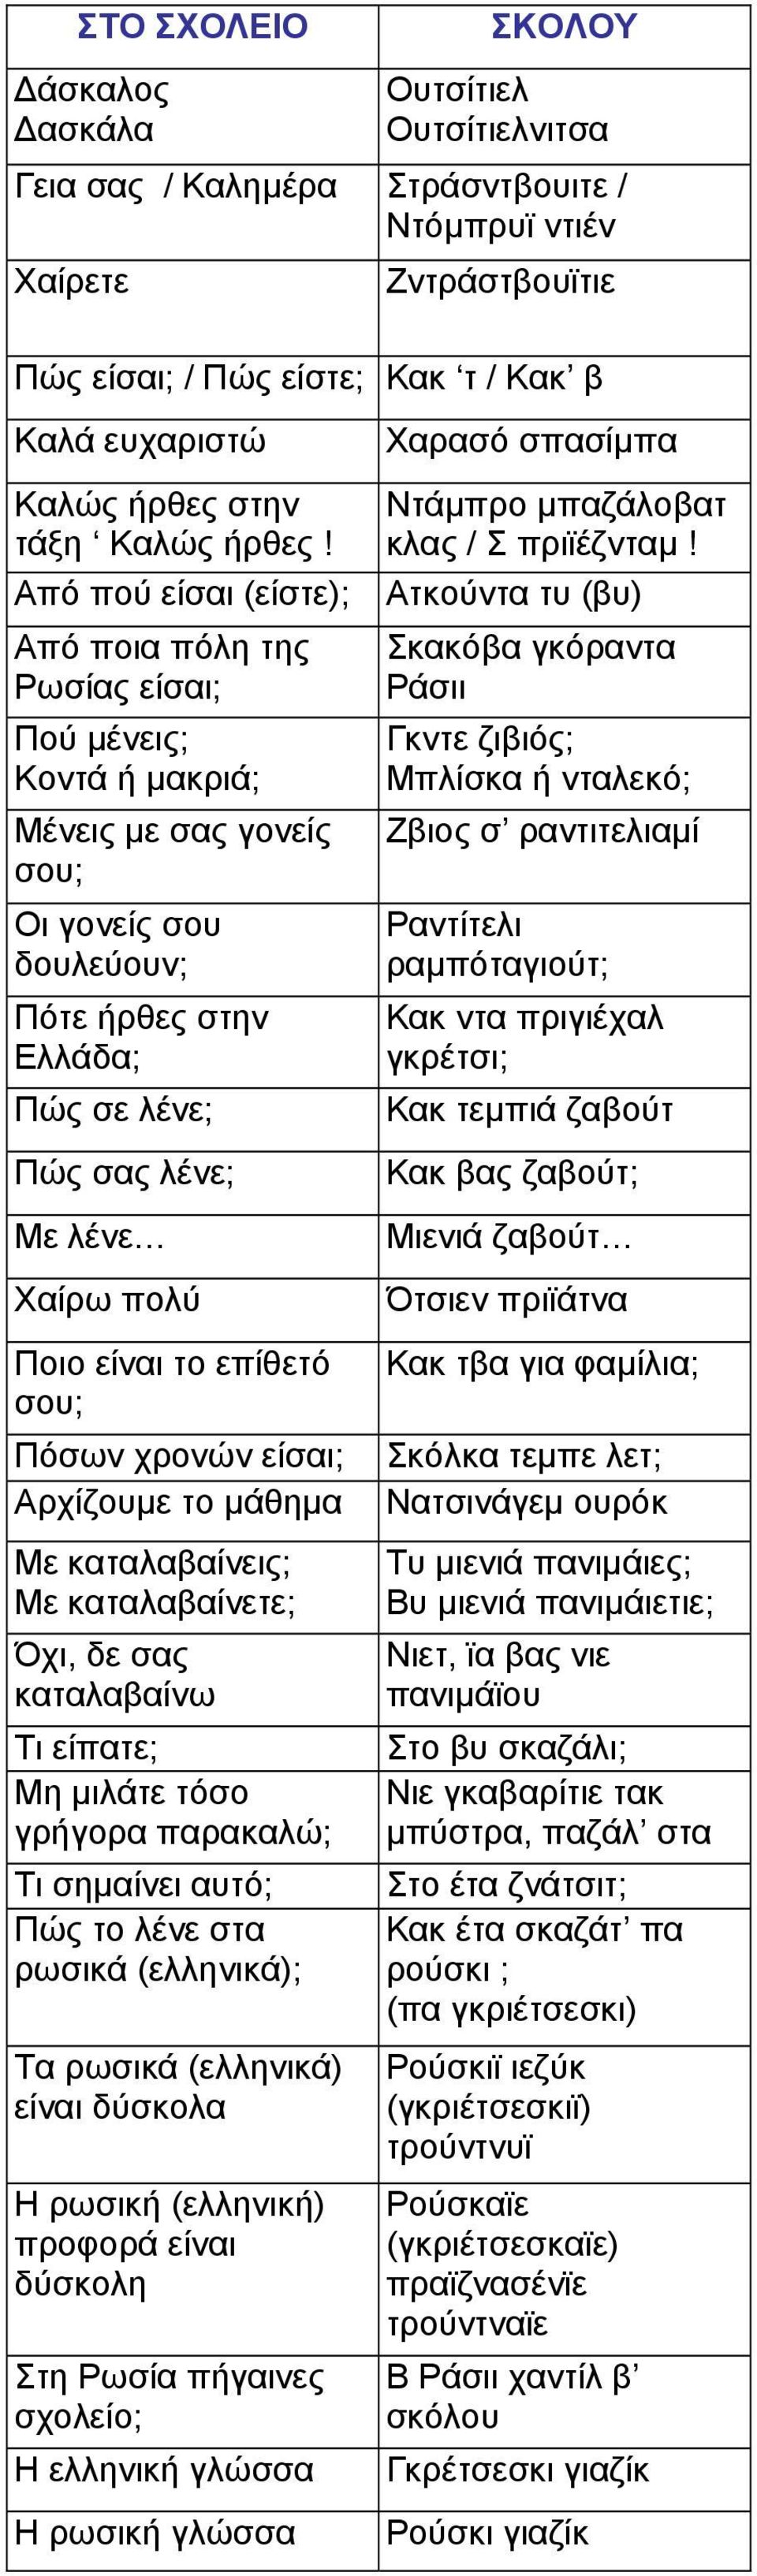 Από πού είσαι (είστε); Από ποια πόλη της Ρωσίας είσαι; Πού µένεις; Κοντά ή µακριά; Μένεις µε σας γονείς σου; Οι γονείς σου δουλεύουν; Πότε ήρθες στην Ελλάδα; Πώς σε λένε; Πώς σας λένε; Με λένε Χαίρω